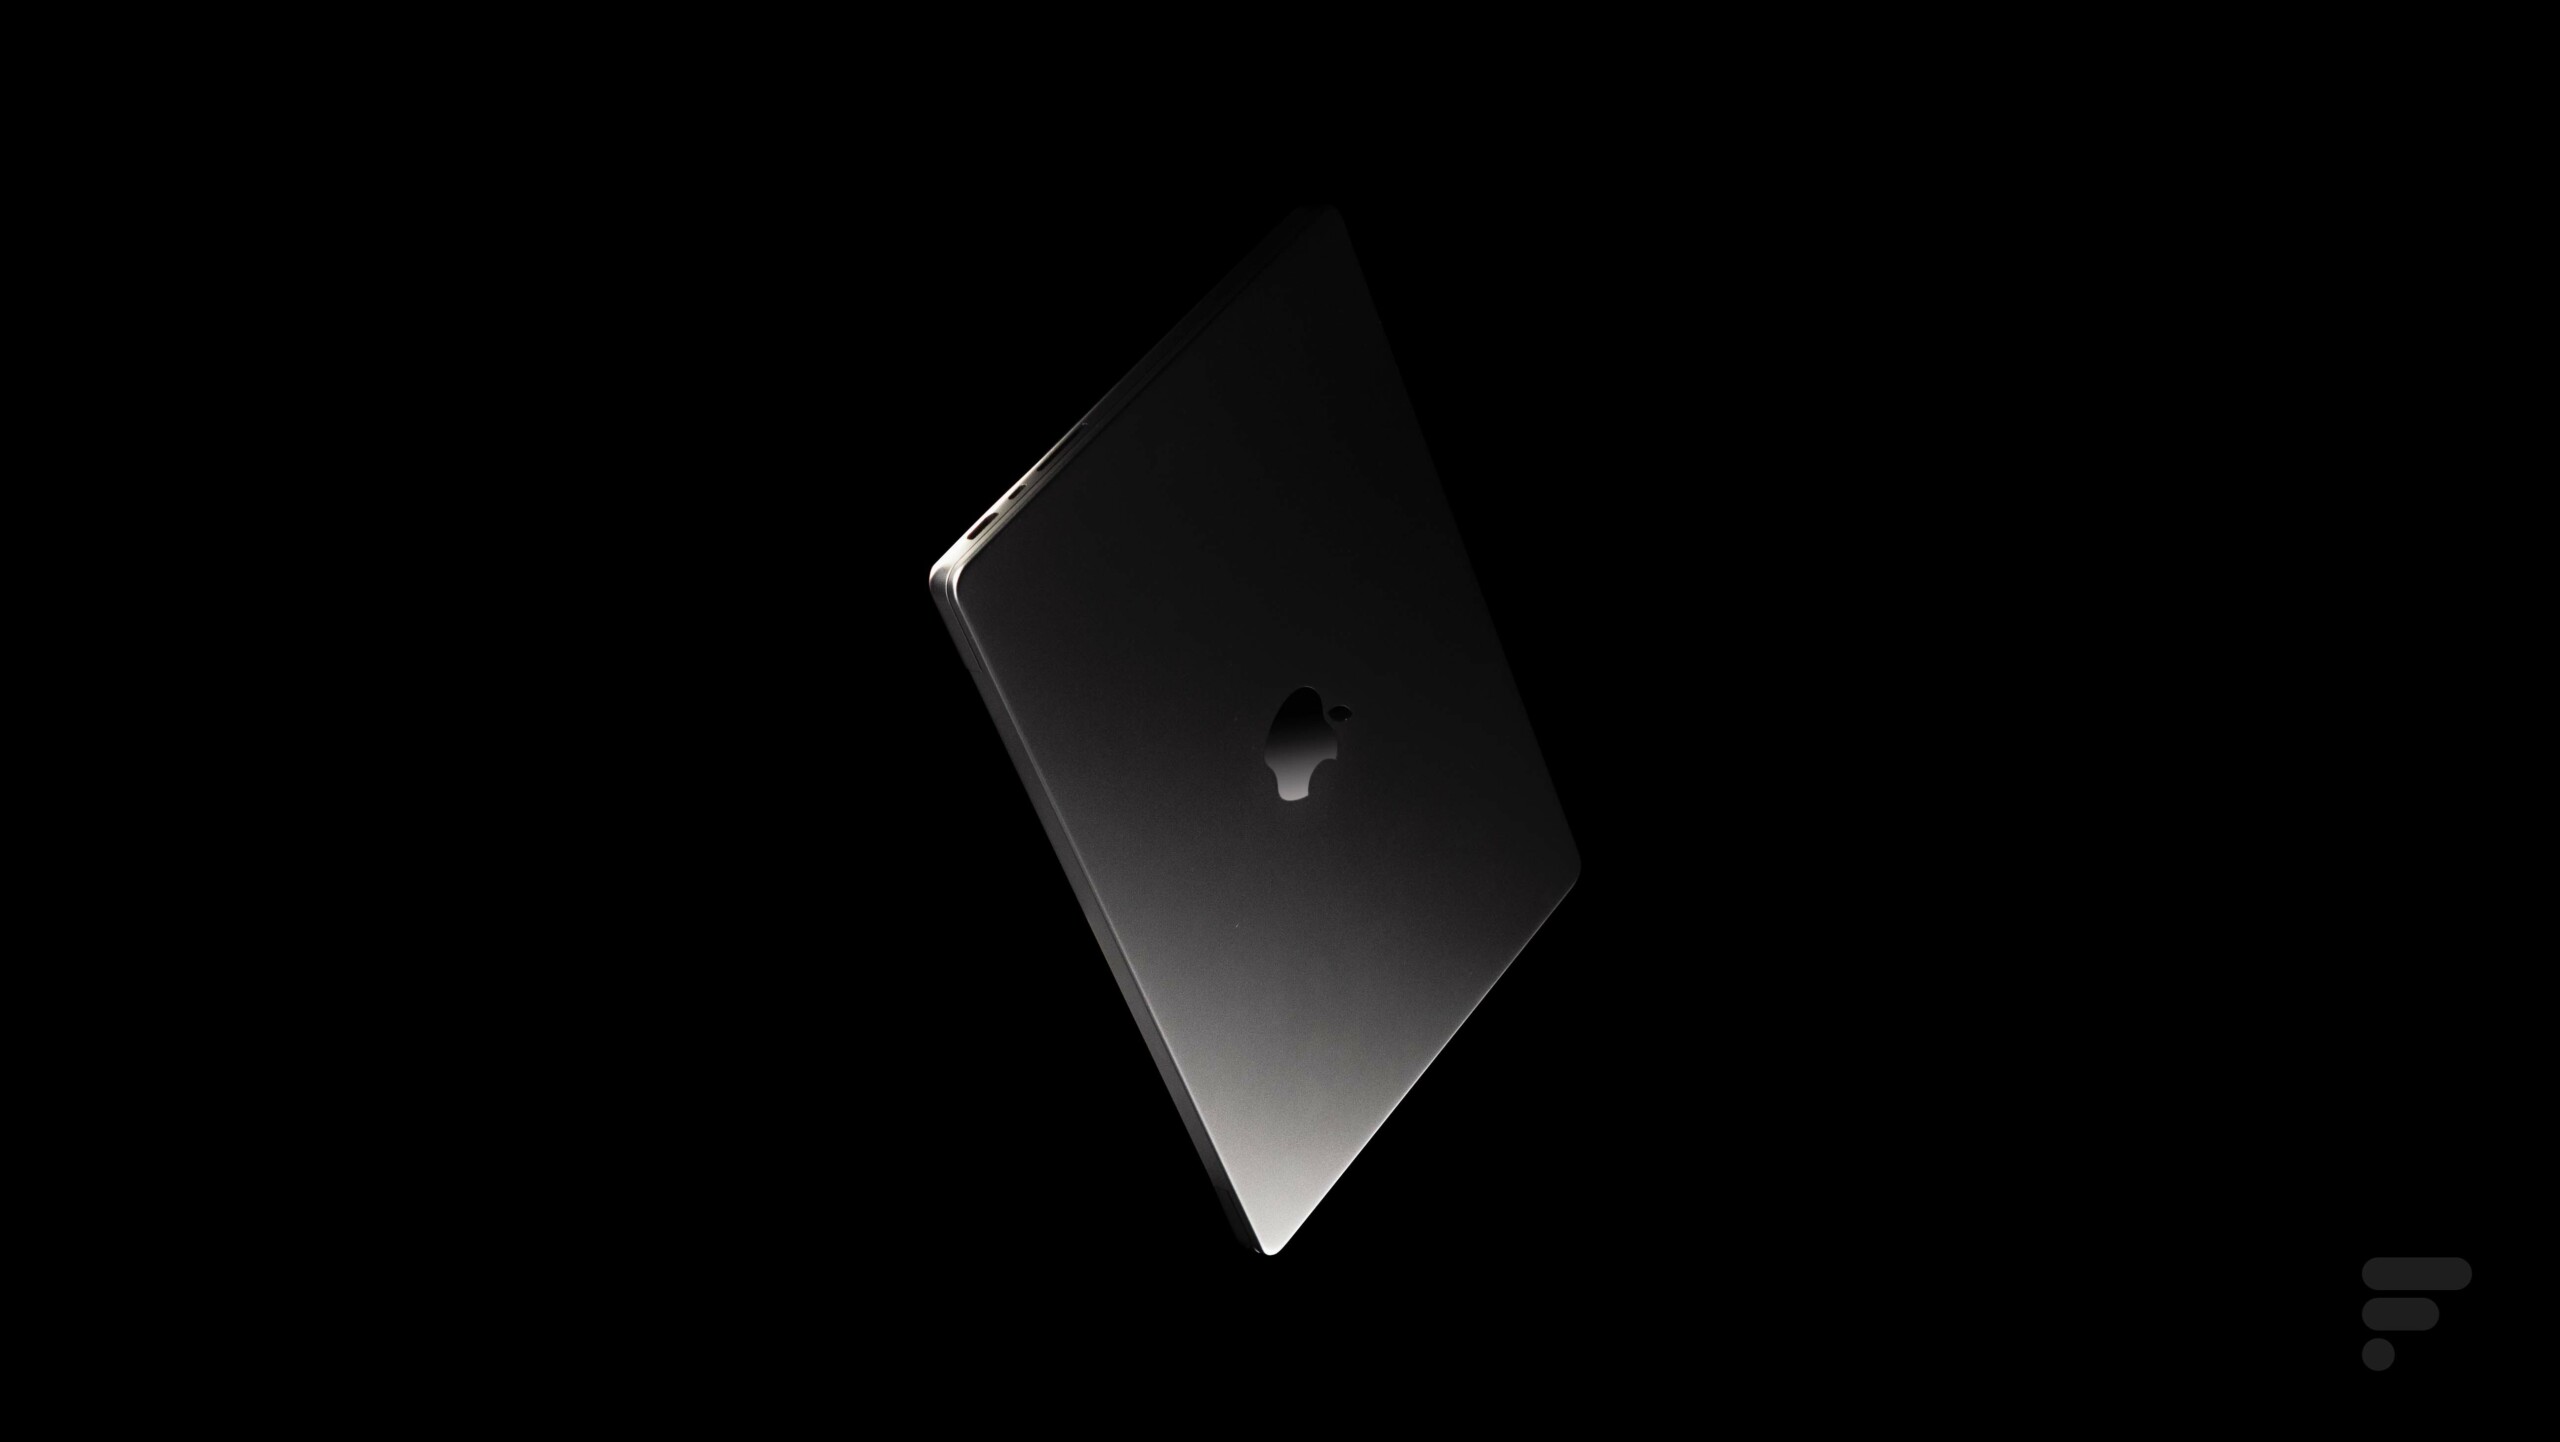 Le performant MacBook Pro avec sa puce M1 passe sous les 2 000 € - Numerama